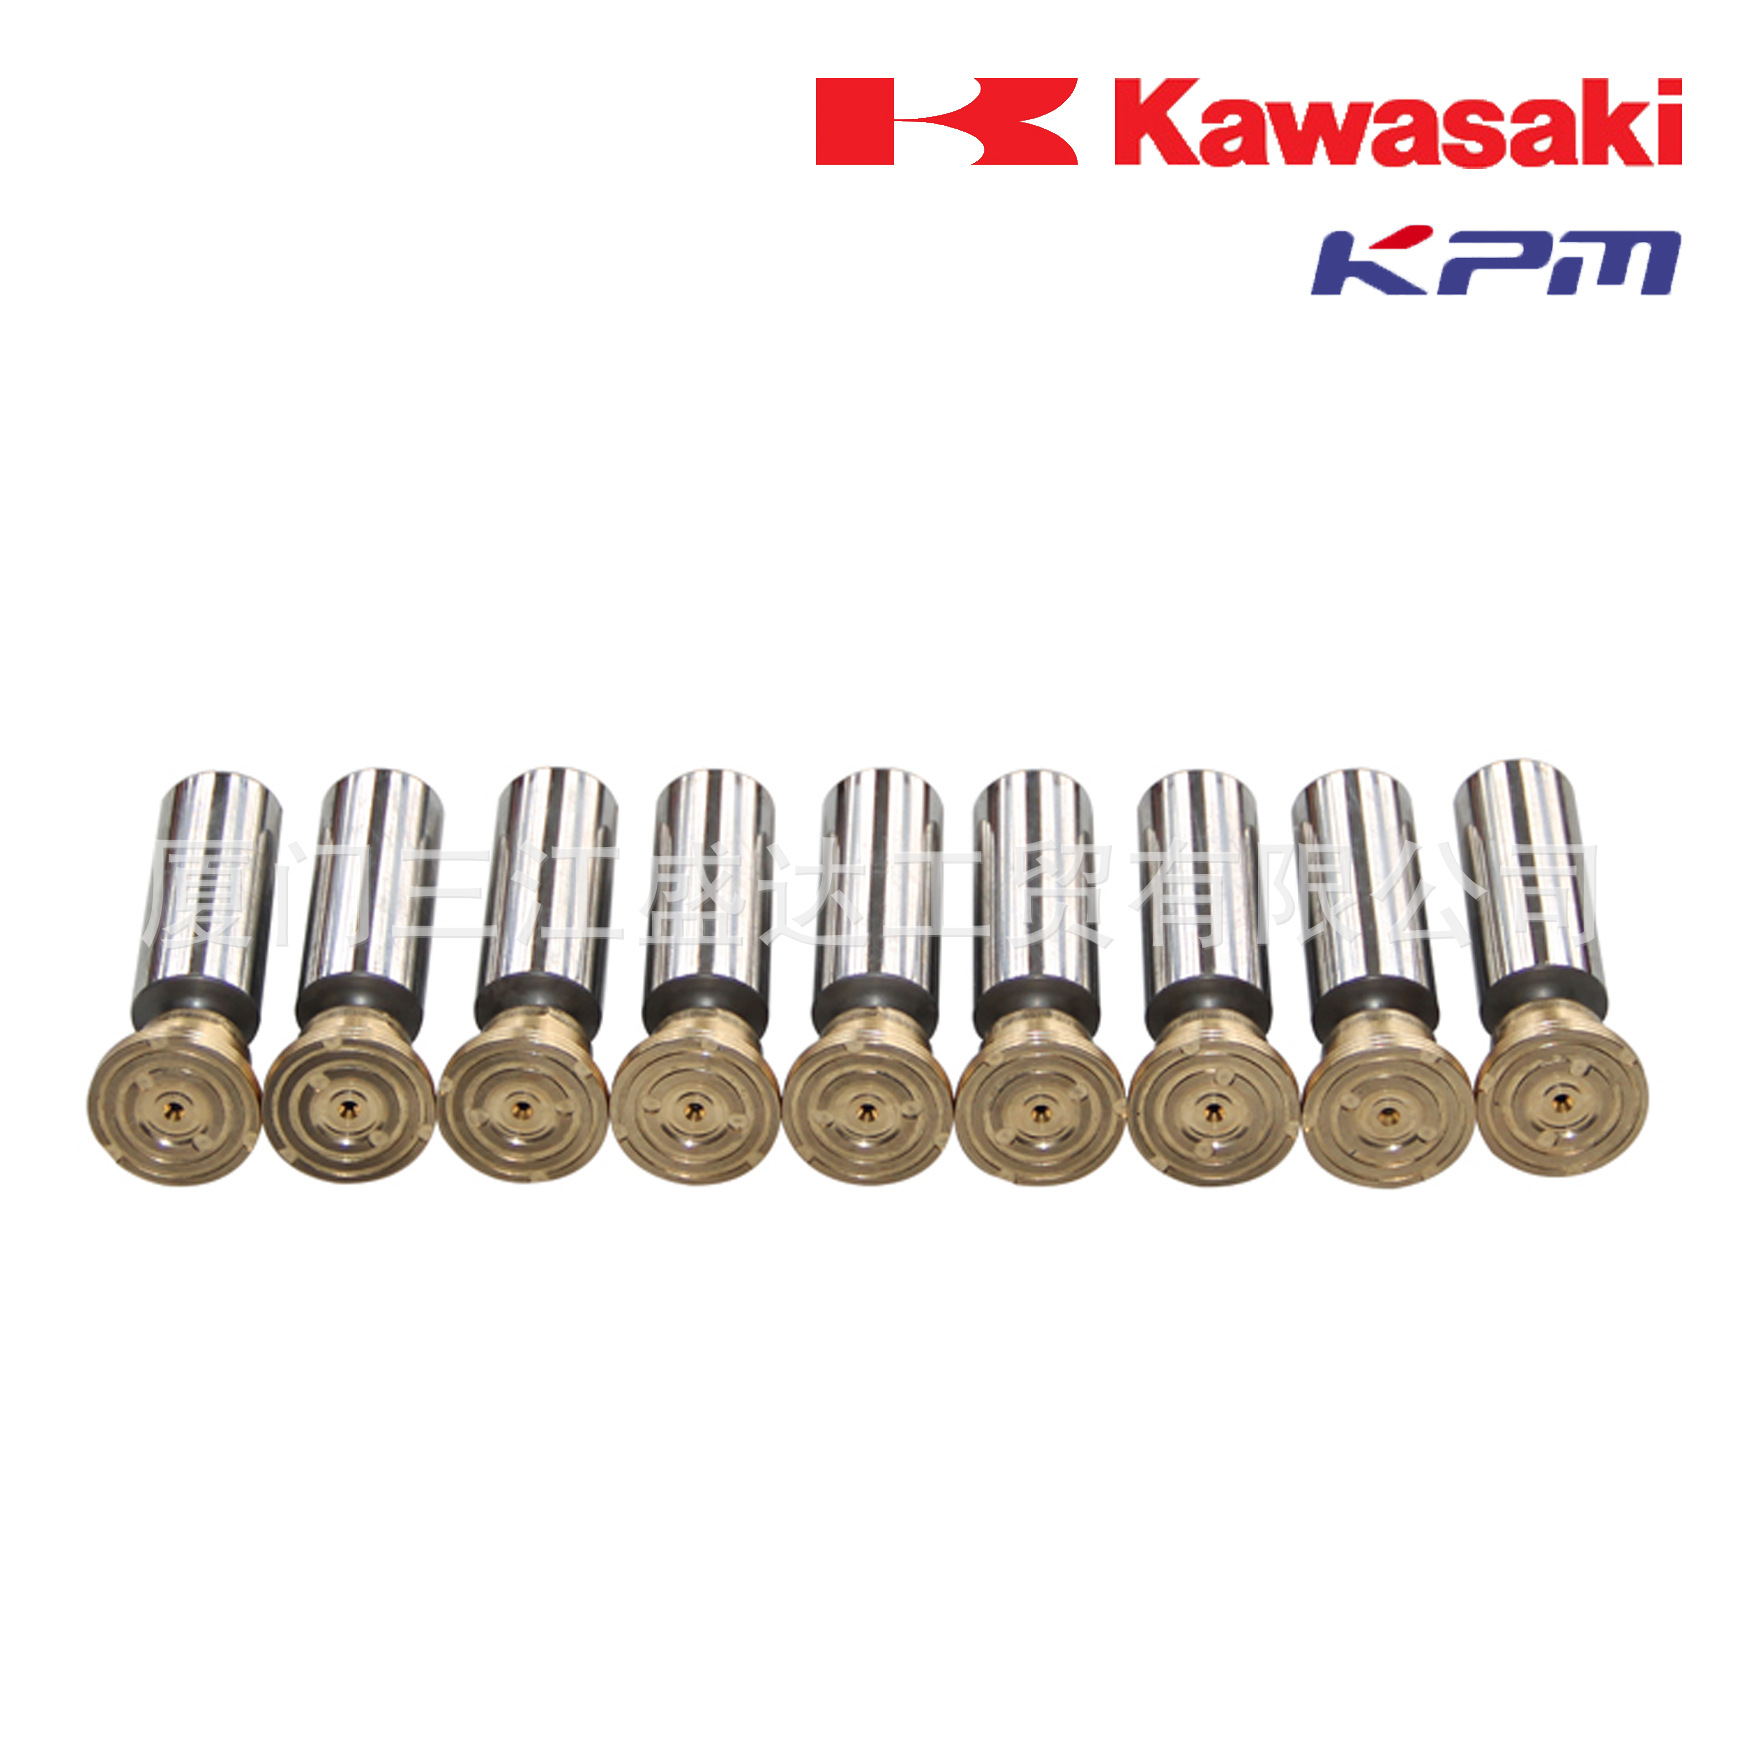 川崎Kawasaki柱塞组件2924530-0456川崎K3V112DT系列纯正配件图片